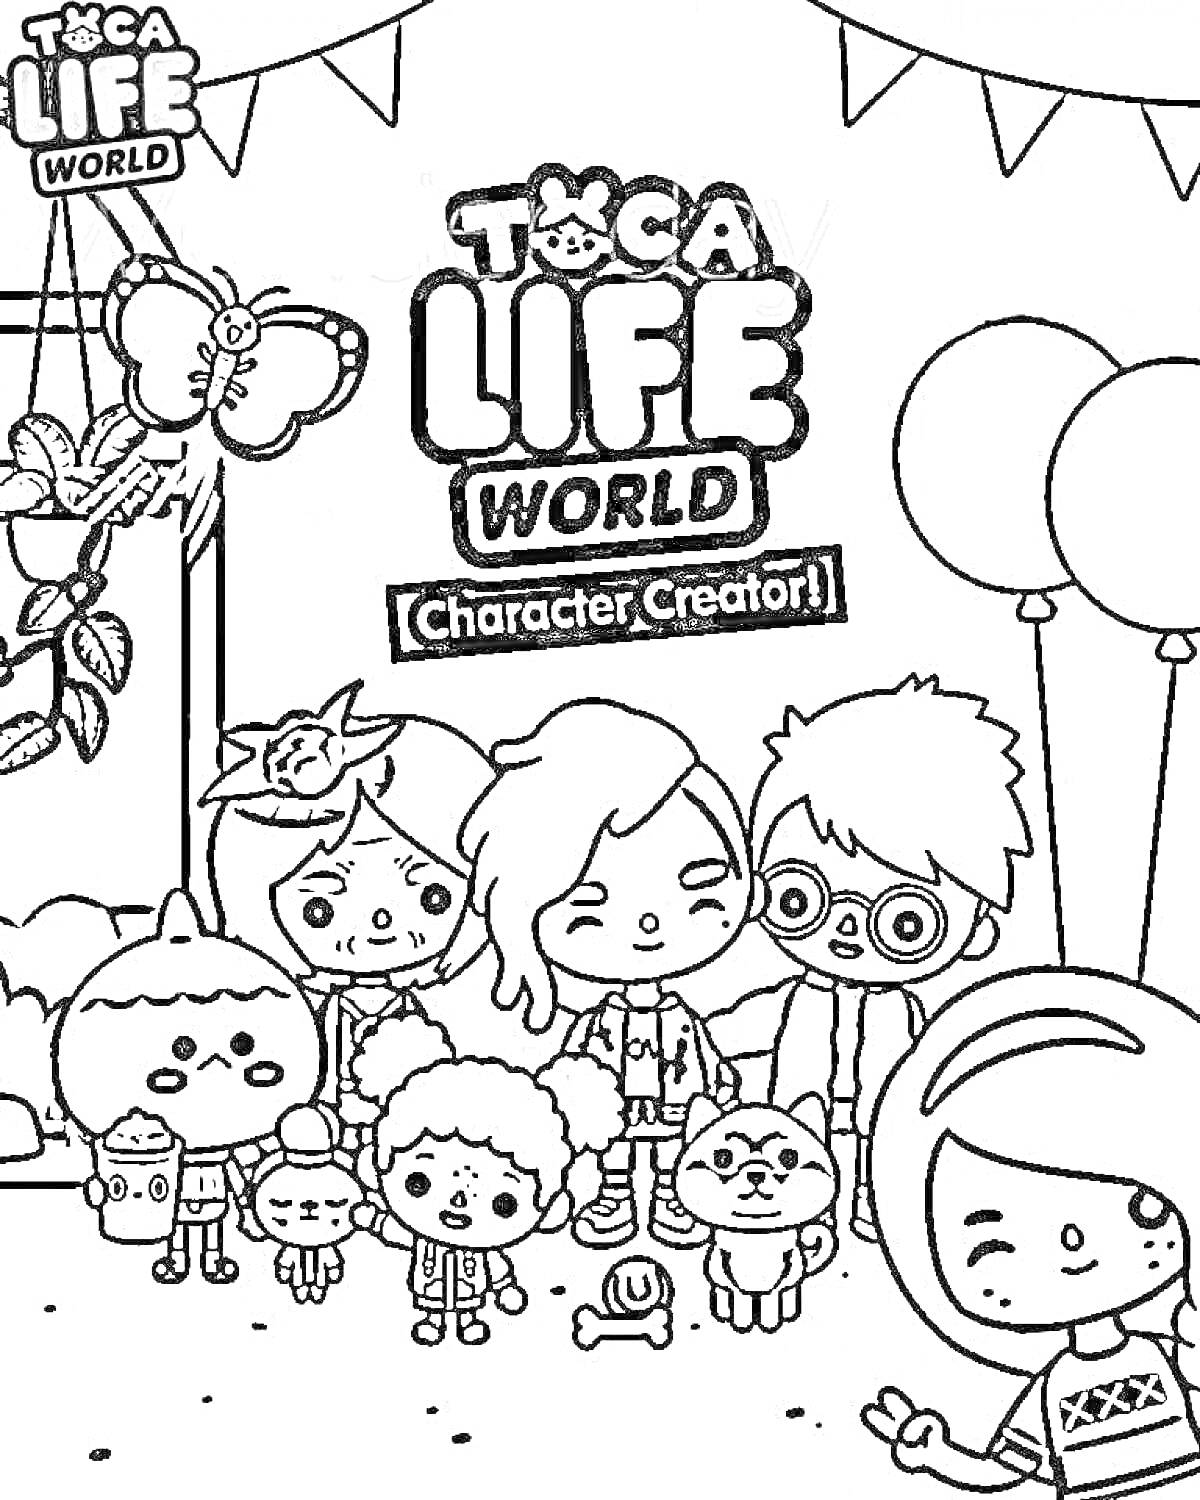 На раскраске изображено: Toca Boca, Toca Life World, Игра, Воздушные шары, Бабочка, Собака, Игрушки, Творчество, Для детей, Персонаж, Растения